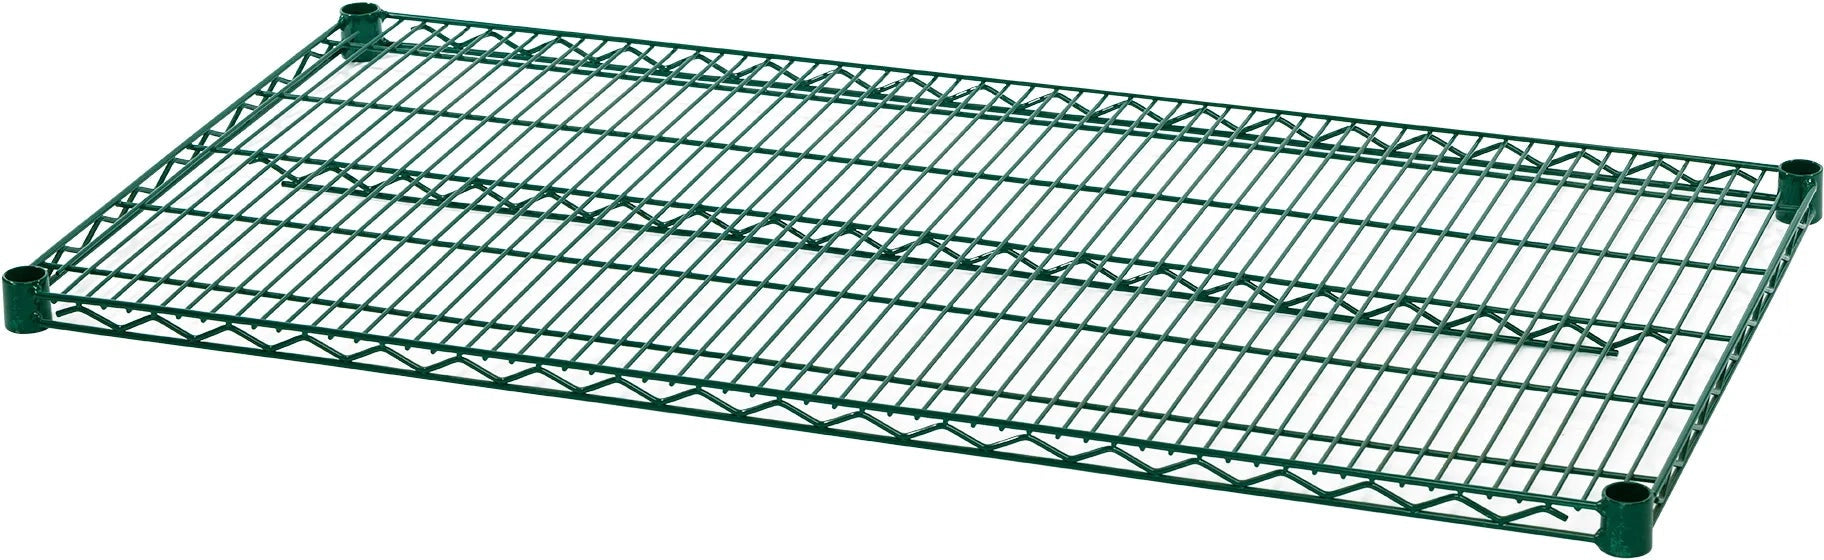 Julien - Rosko 24" x 24" Shelf for Wire Shelving, Green Epoxy - RO-WS-S2424-GE